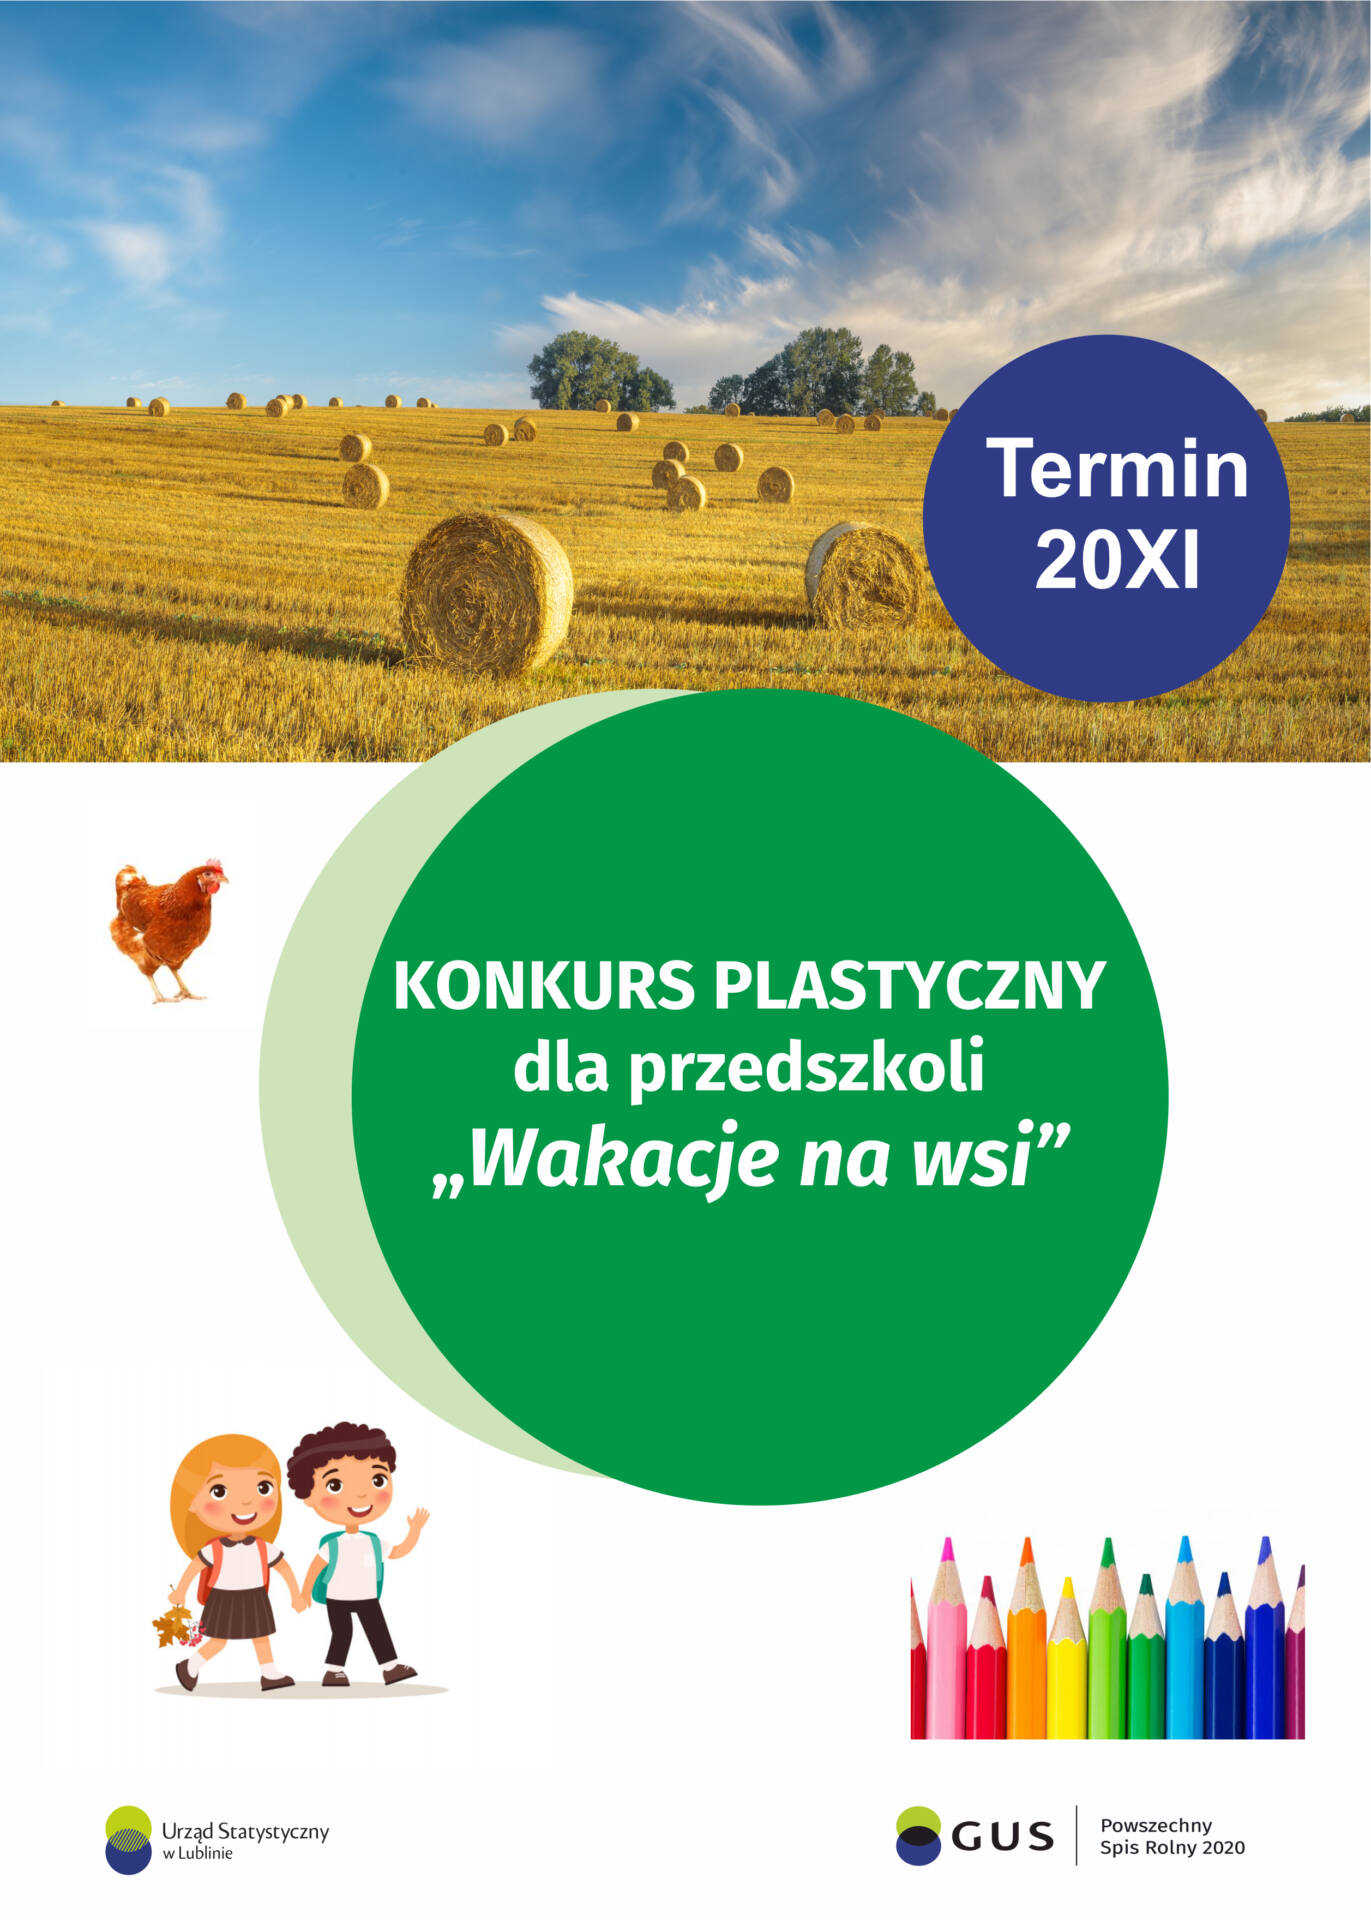 projekt plakatu konkurs plastyczny dla przedszkoli wakacje na wsi "Wakacje na wsi" - konkurs plastyczny dla przedszkoli